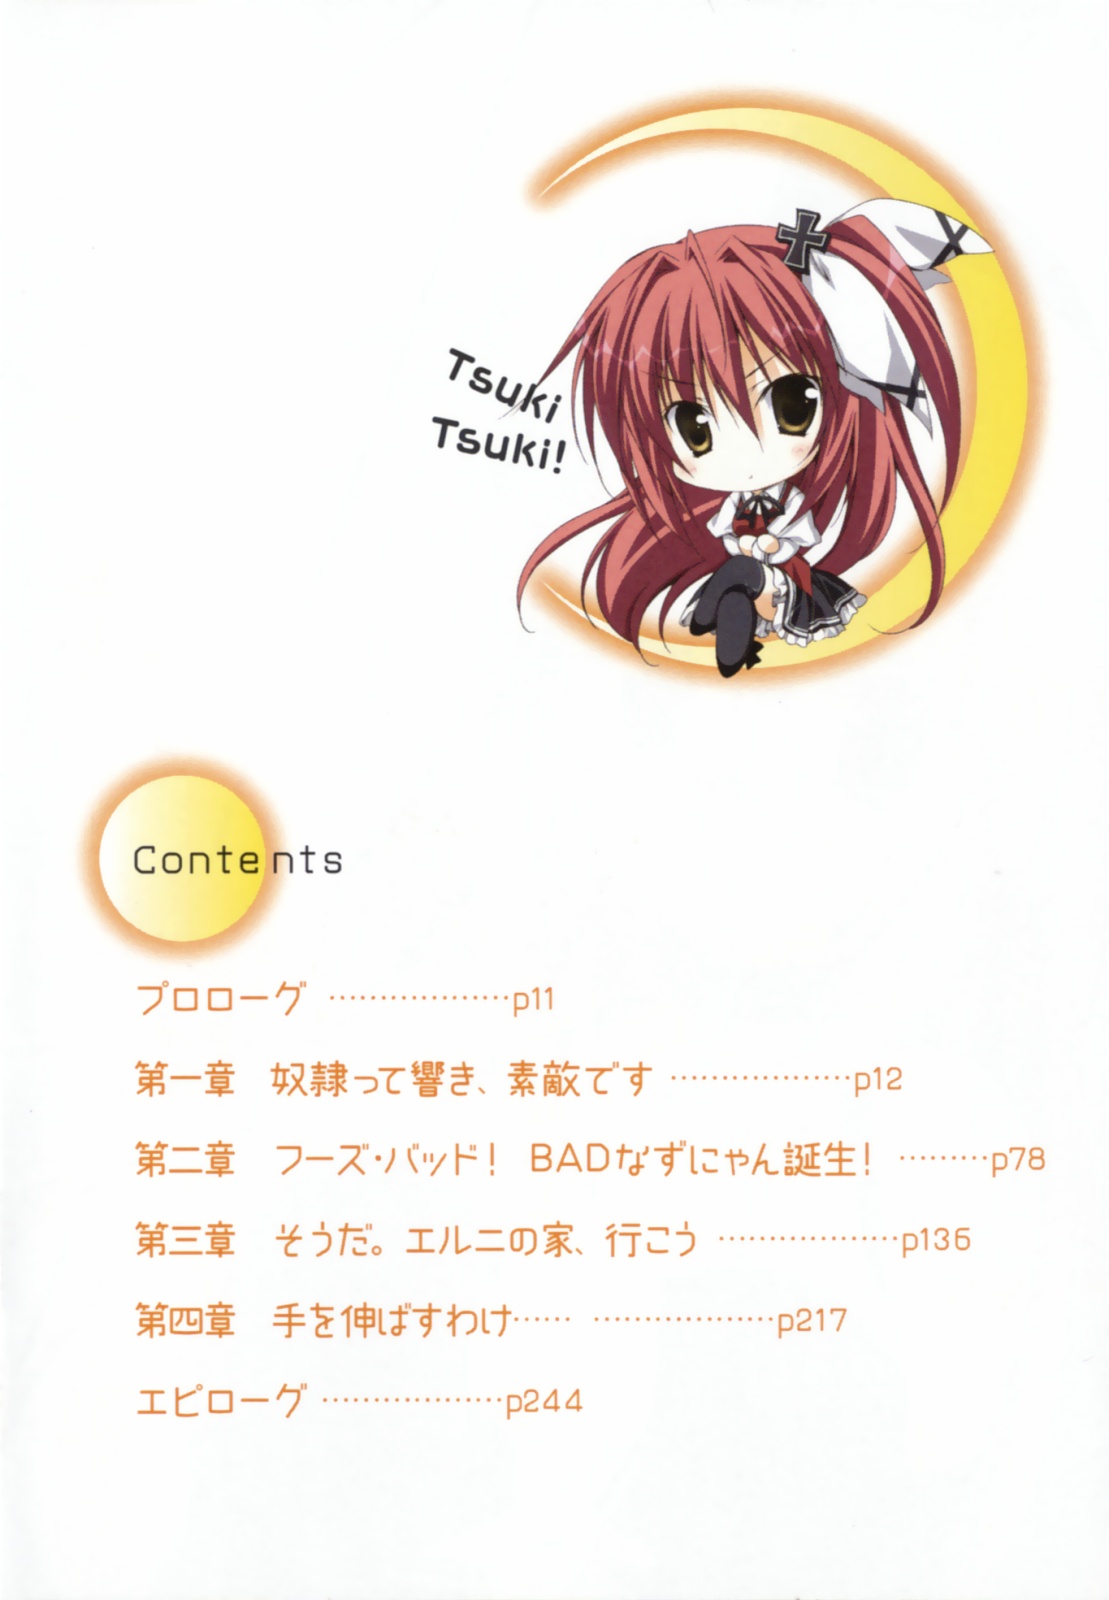 Tsuki_Tsuki_v2_p008.jpg